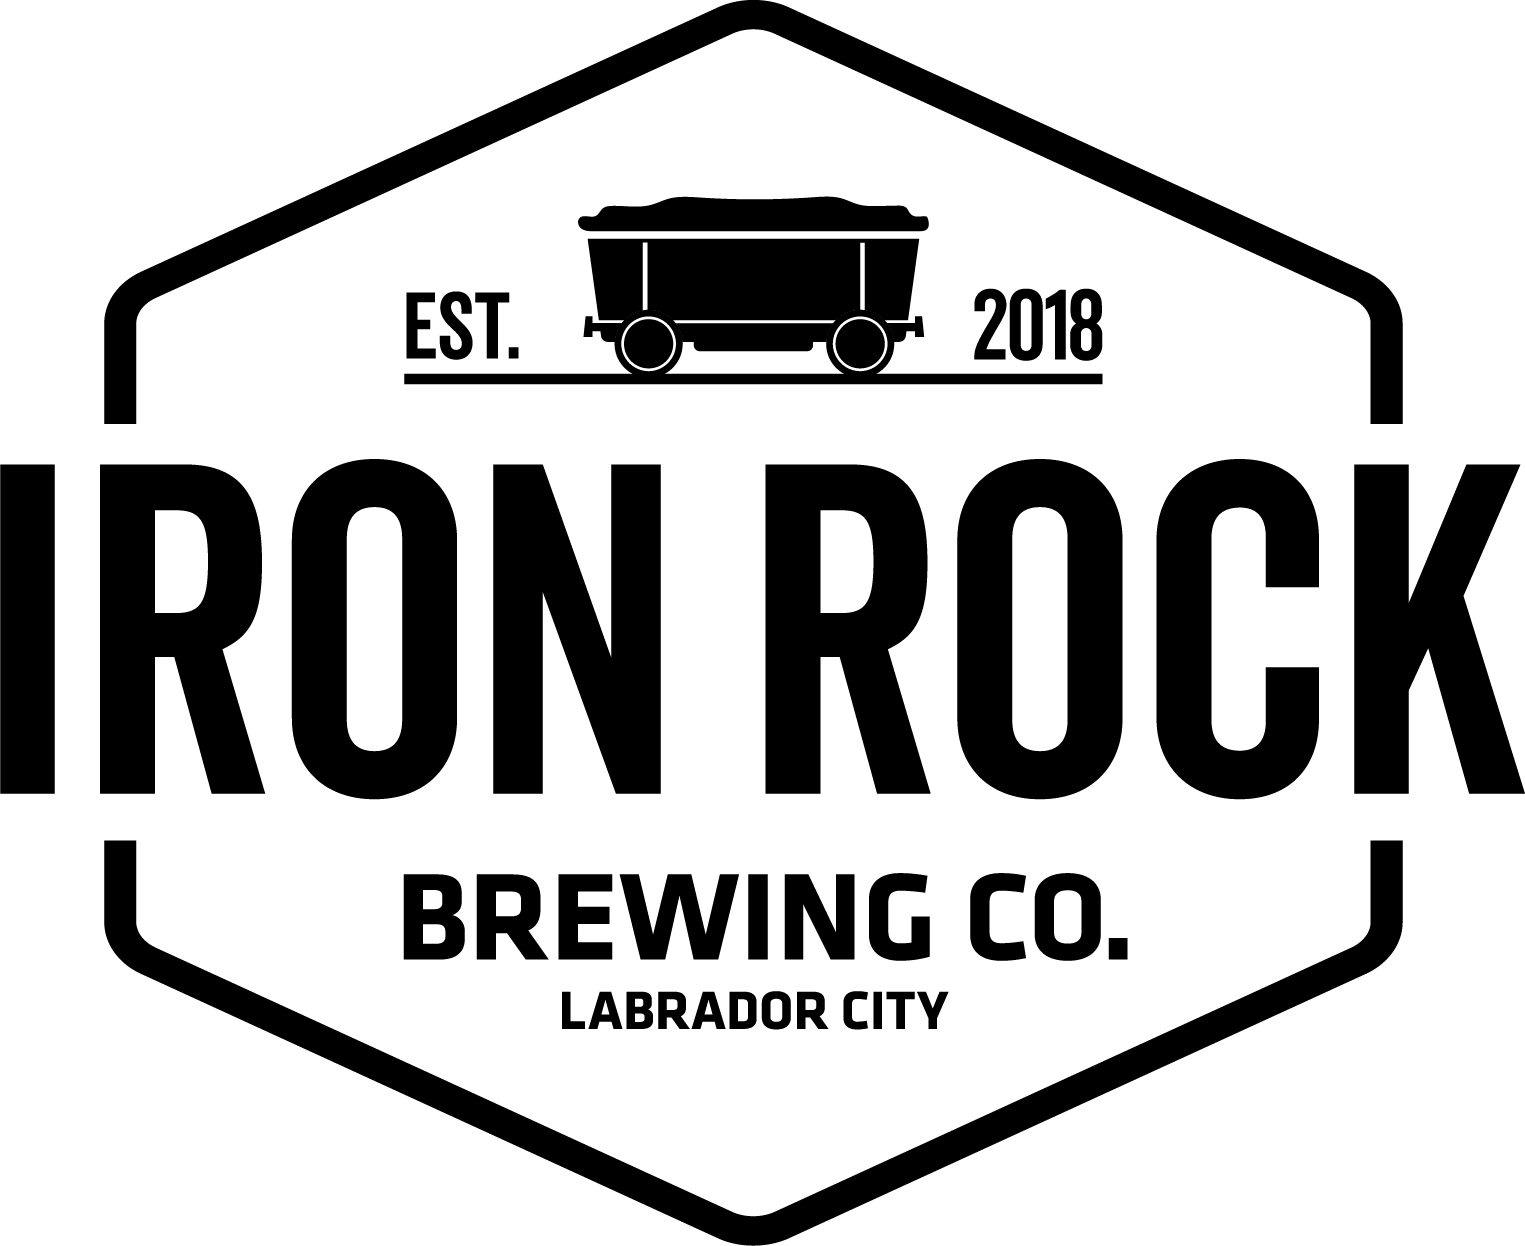 Iron Rock Brewing Co. logo